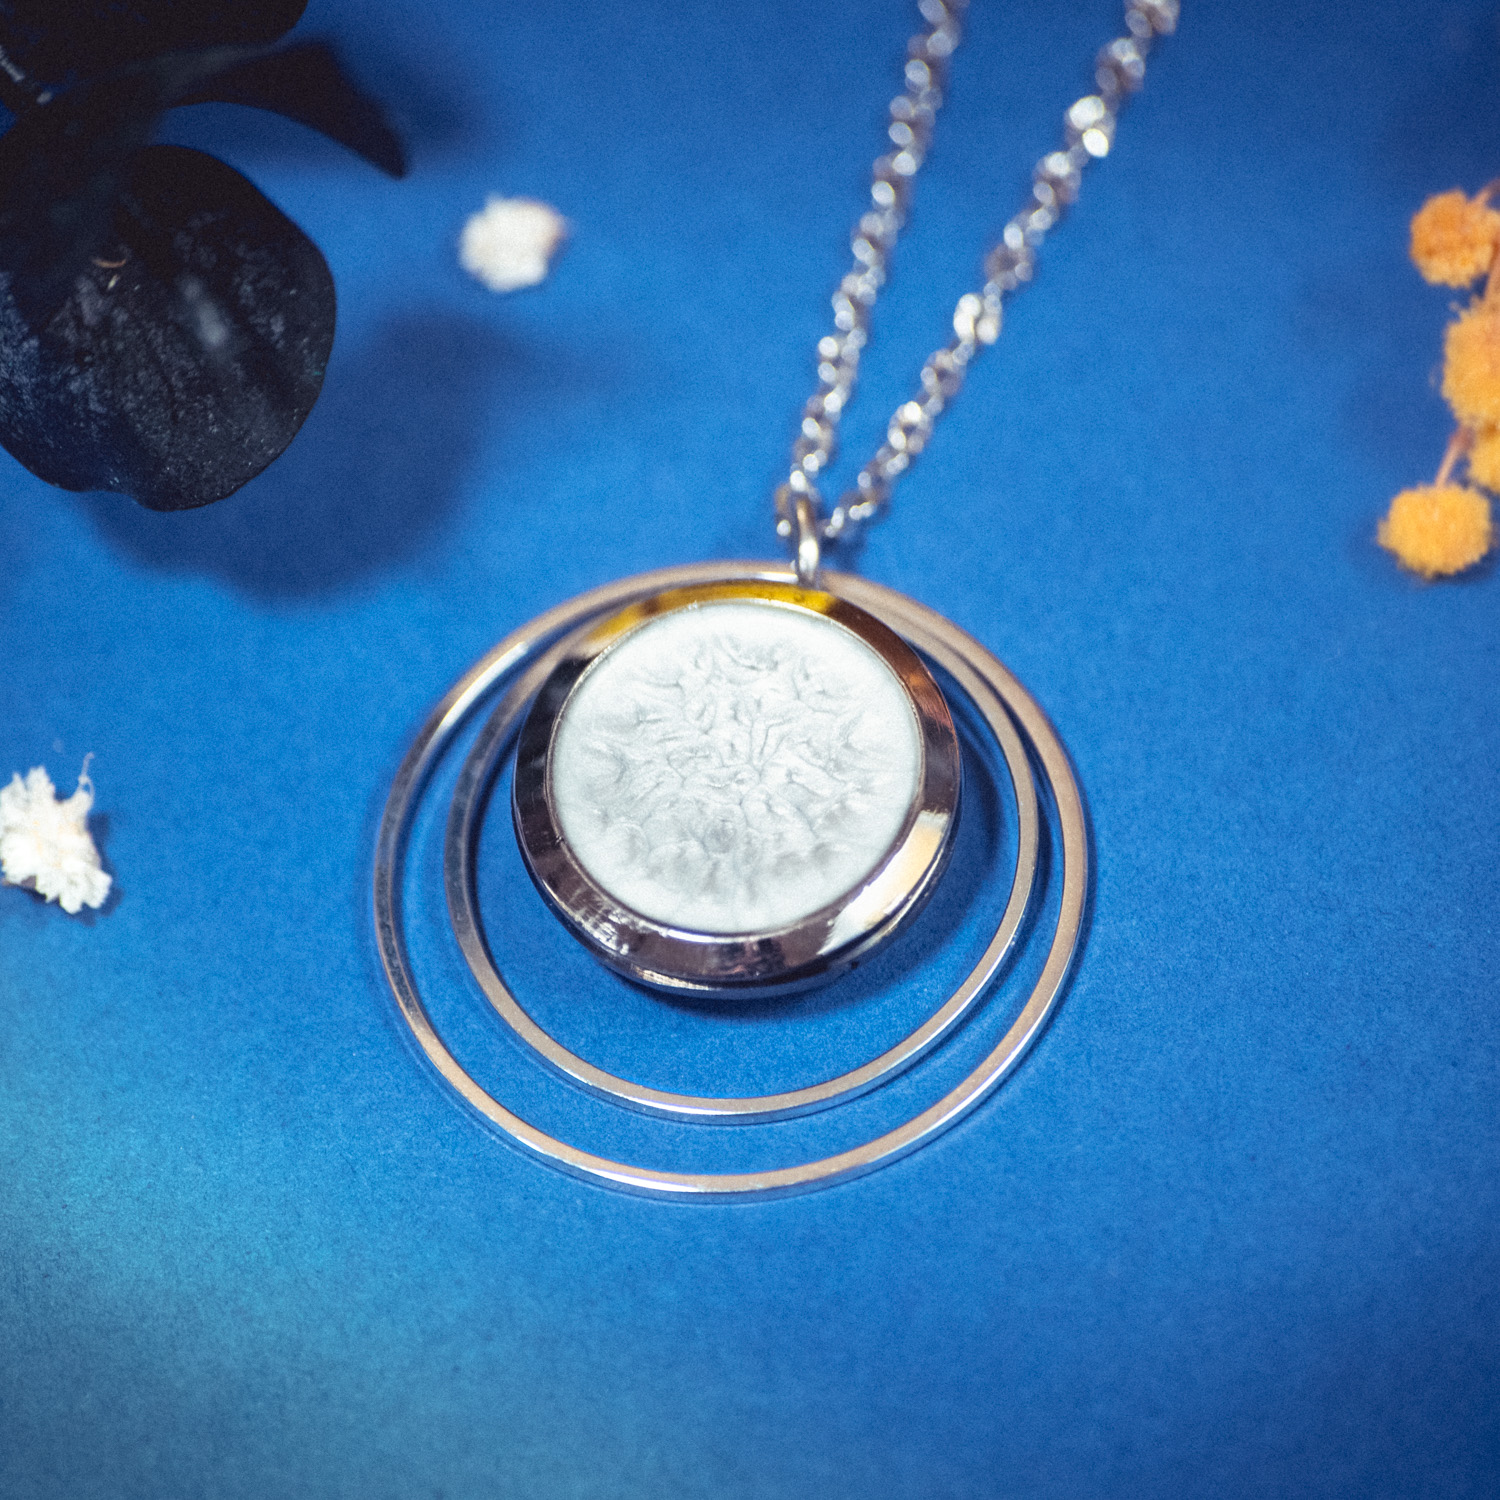 Assuna – Collier Lunare Judith – bouton ancien 1940 – collier d’inspiration vintage en forme de croissant de lune